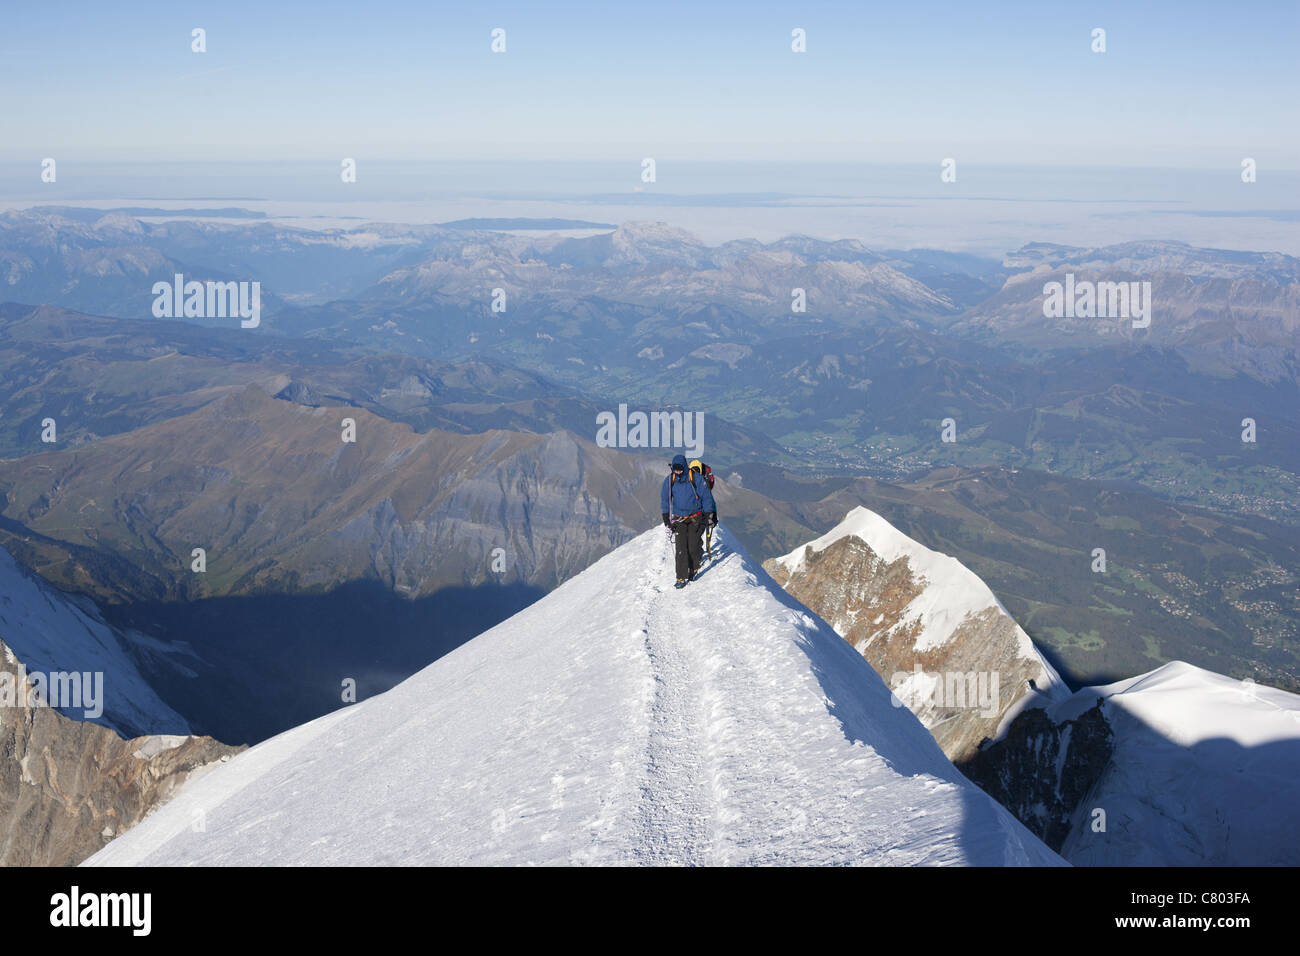 Alpinisten erreichen den Gipfel (Höhe: 4810m) des Mont Blanc. Chamonix, Haute-Savoie, Auvergne-Rhône-Alpes, Frankreich. Stockfoto